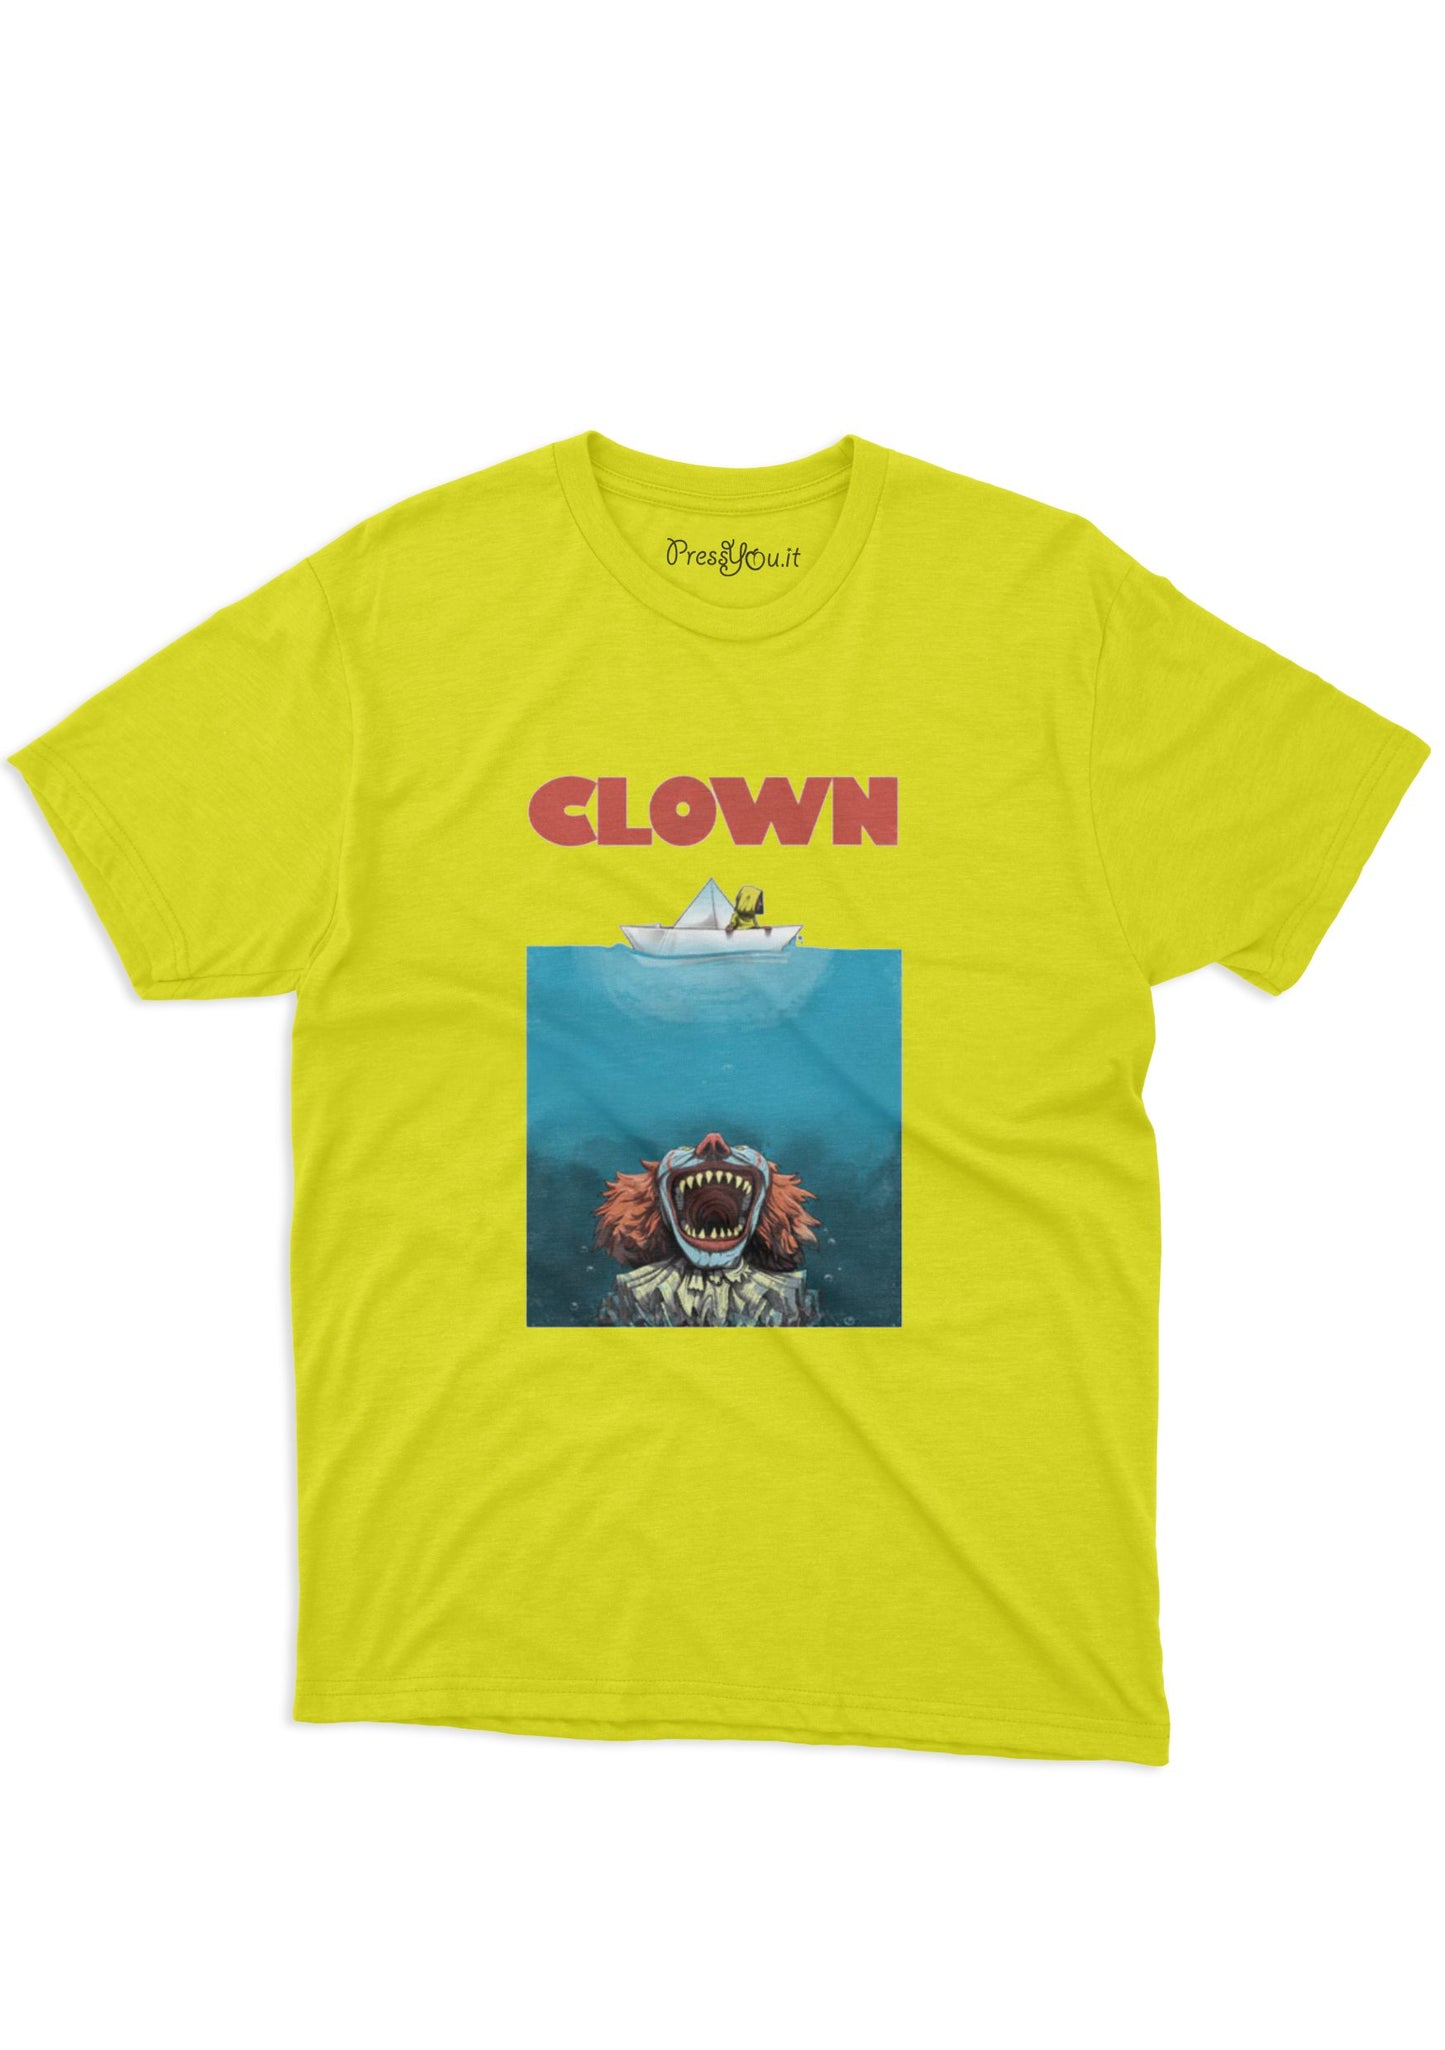 90s movie shark clown t-shirt